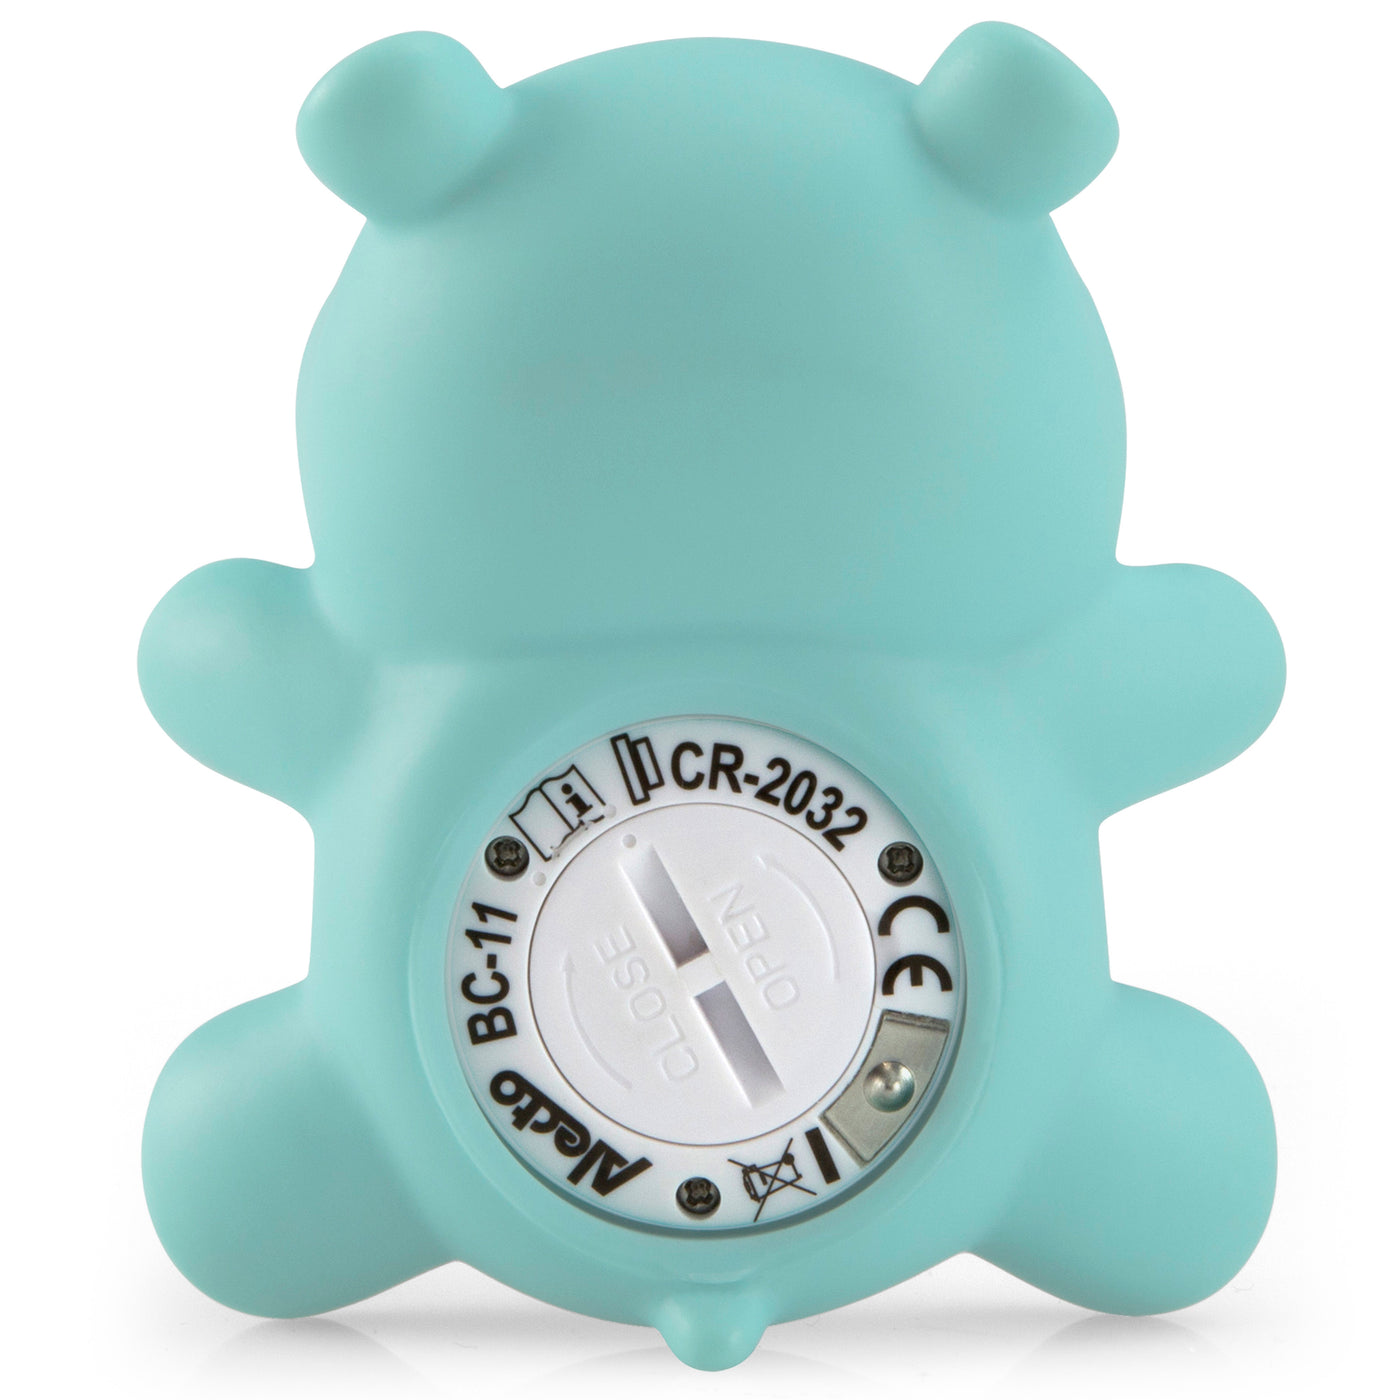 Alecto BC-11 HIPPO - Thermomètre de bain et de chambre, hippopotame